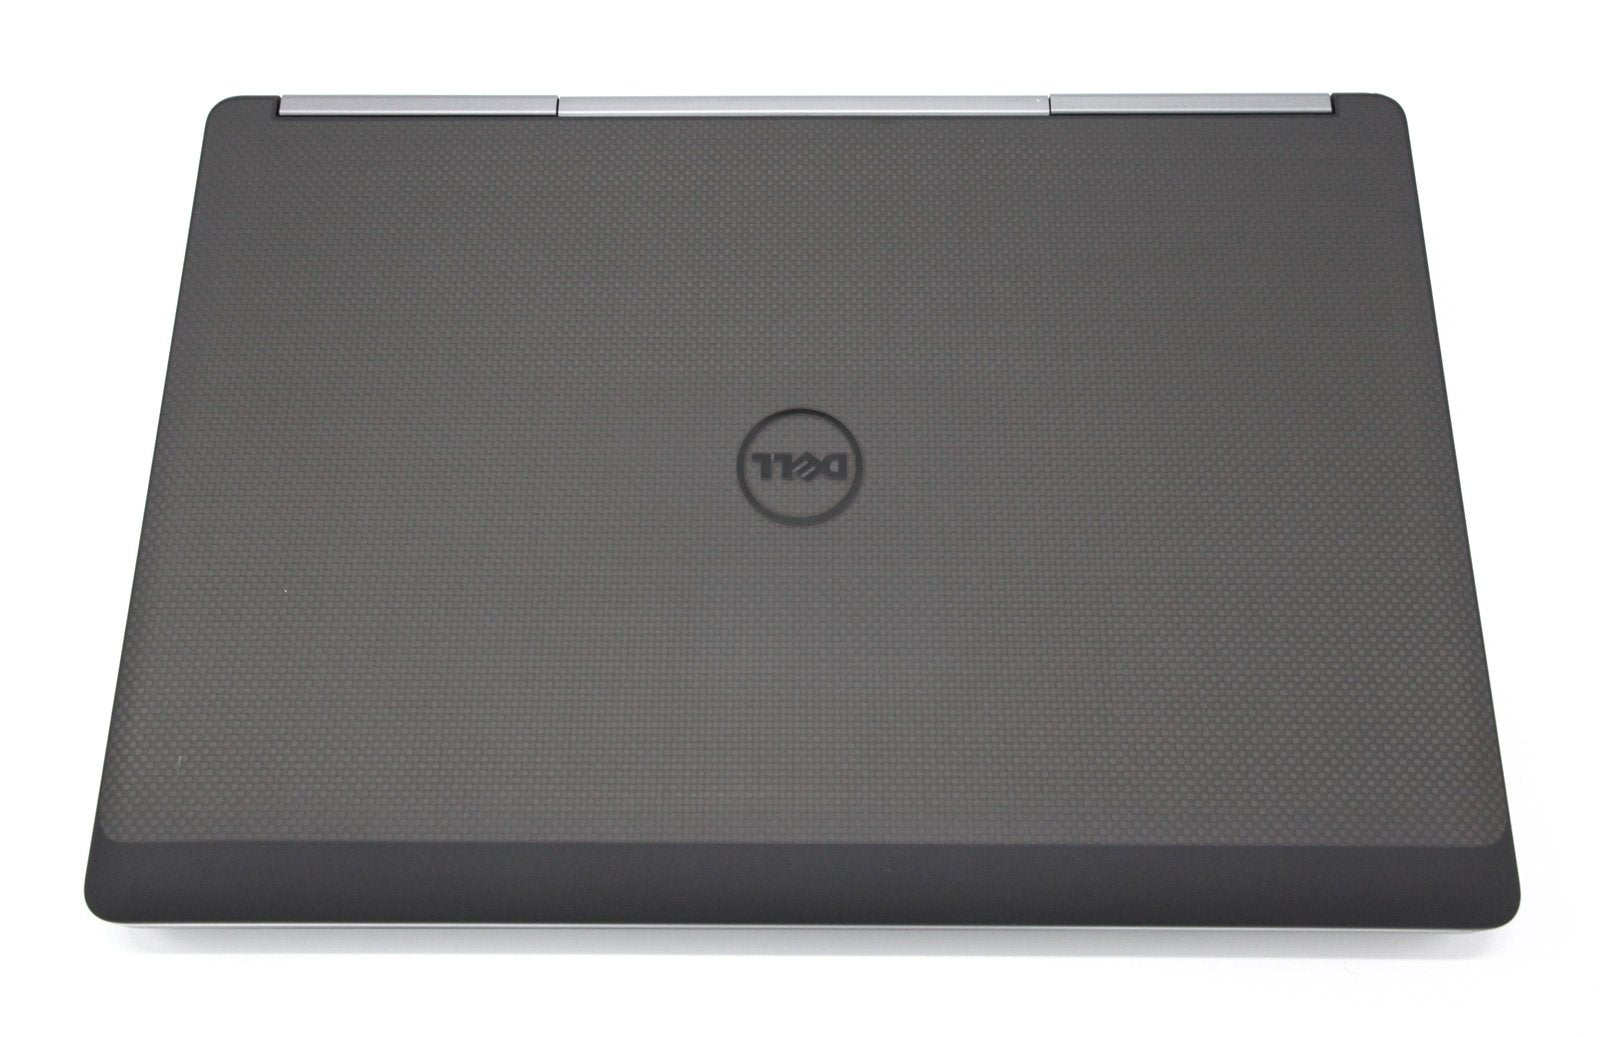 Dell Precision 7720 17.3" CAD Laptop: Core i7 64GB RAM 1TB, NVIDIA Quadro P5000 - CruiseTech